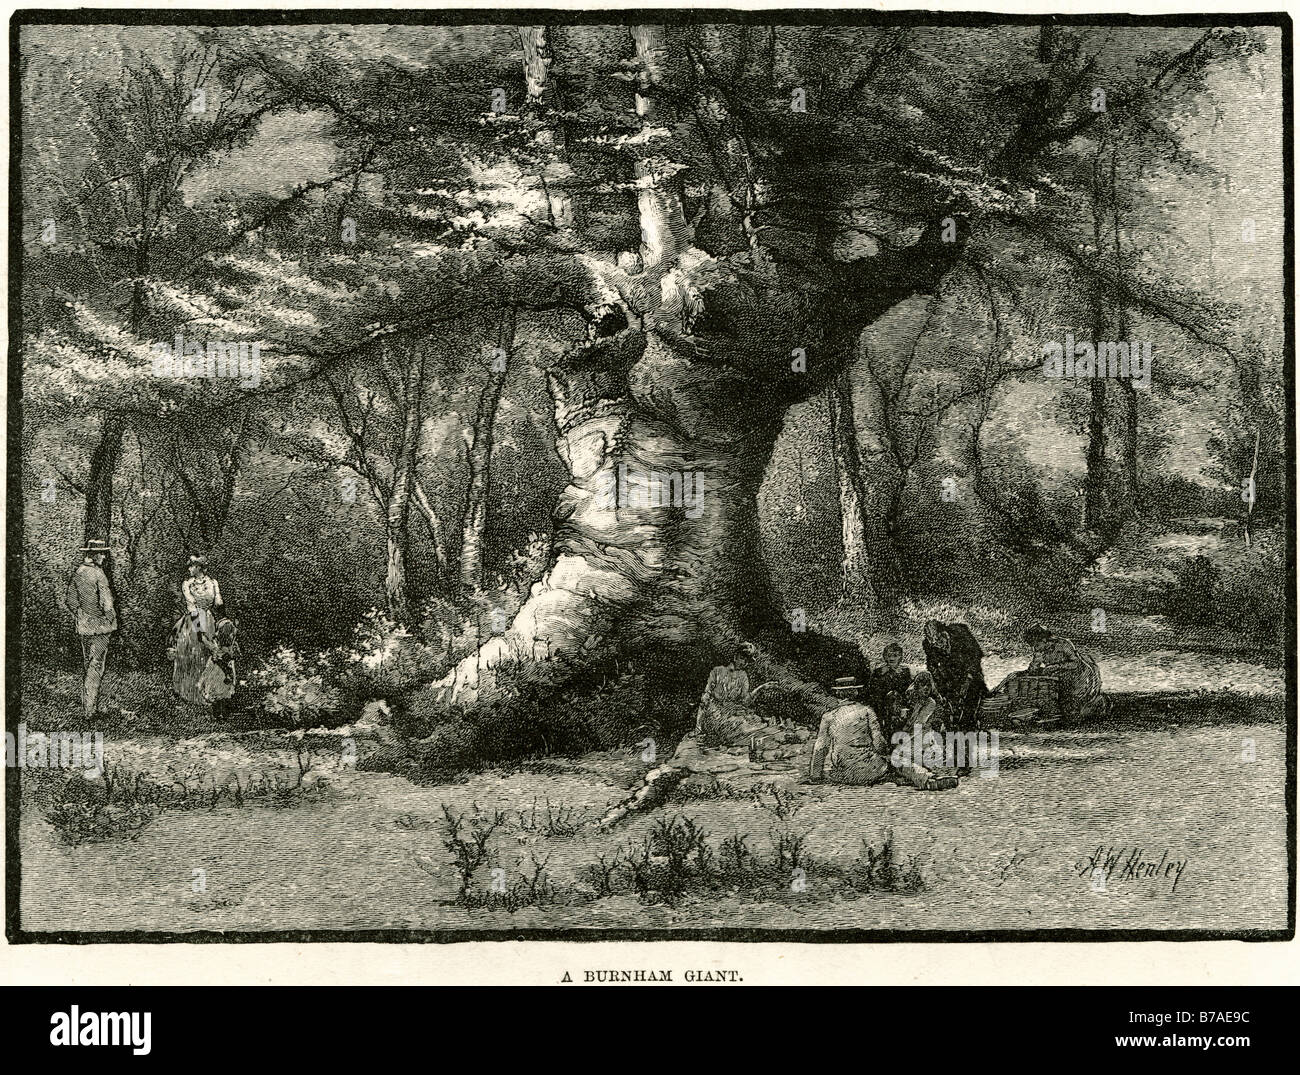 Burnham albero gigante antica balestra sottopancia botanico pranzo picnic famiglia Burnham Beeches è un'area di 540 acri (220 ettari) di un Foto Stock